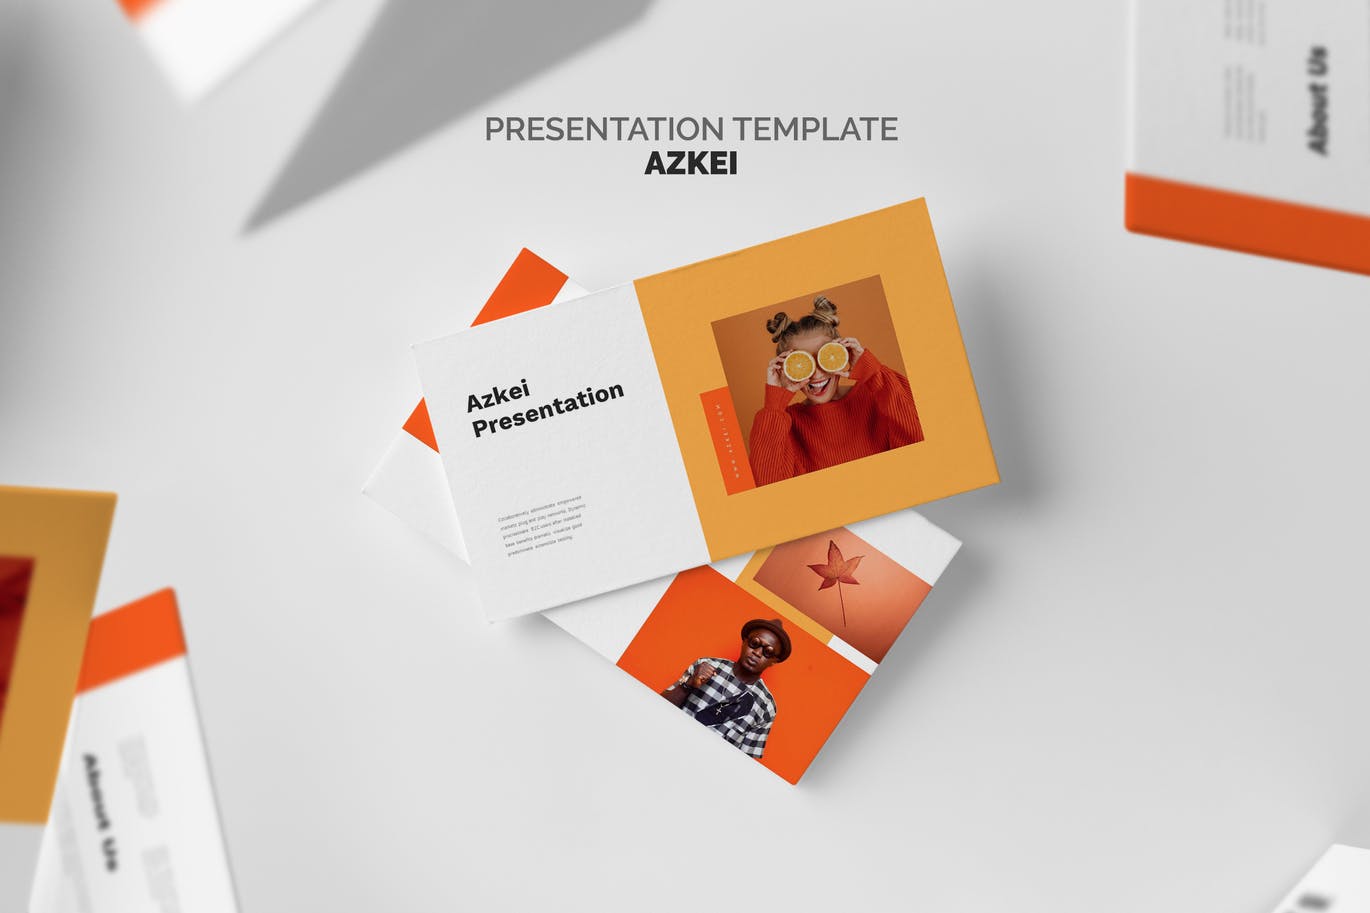 时尚创意橙色主题PPT幻灯片模板免费下载(图1)